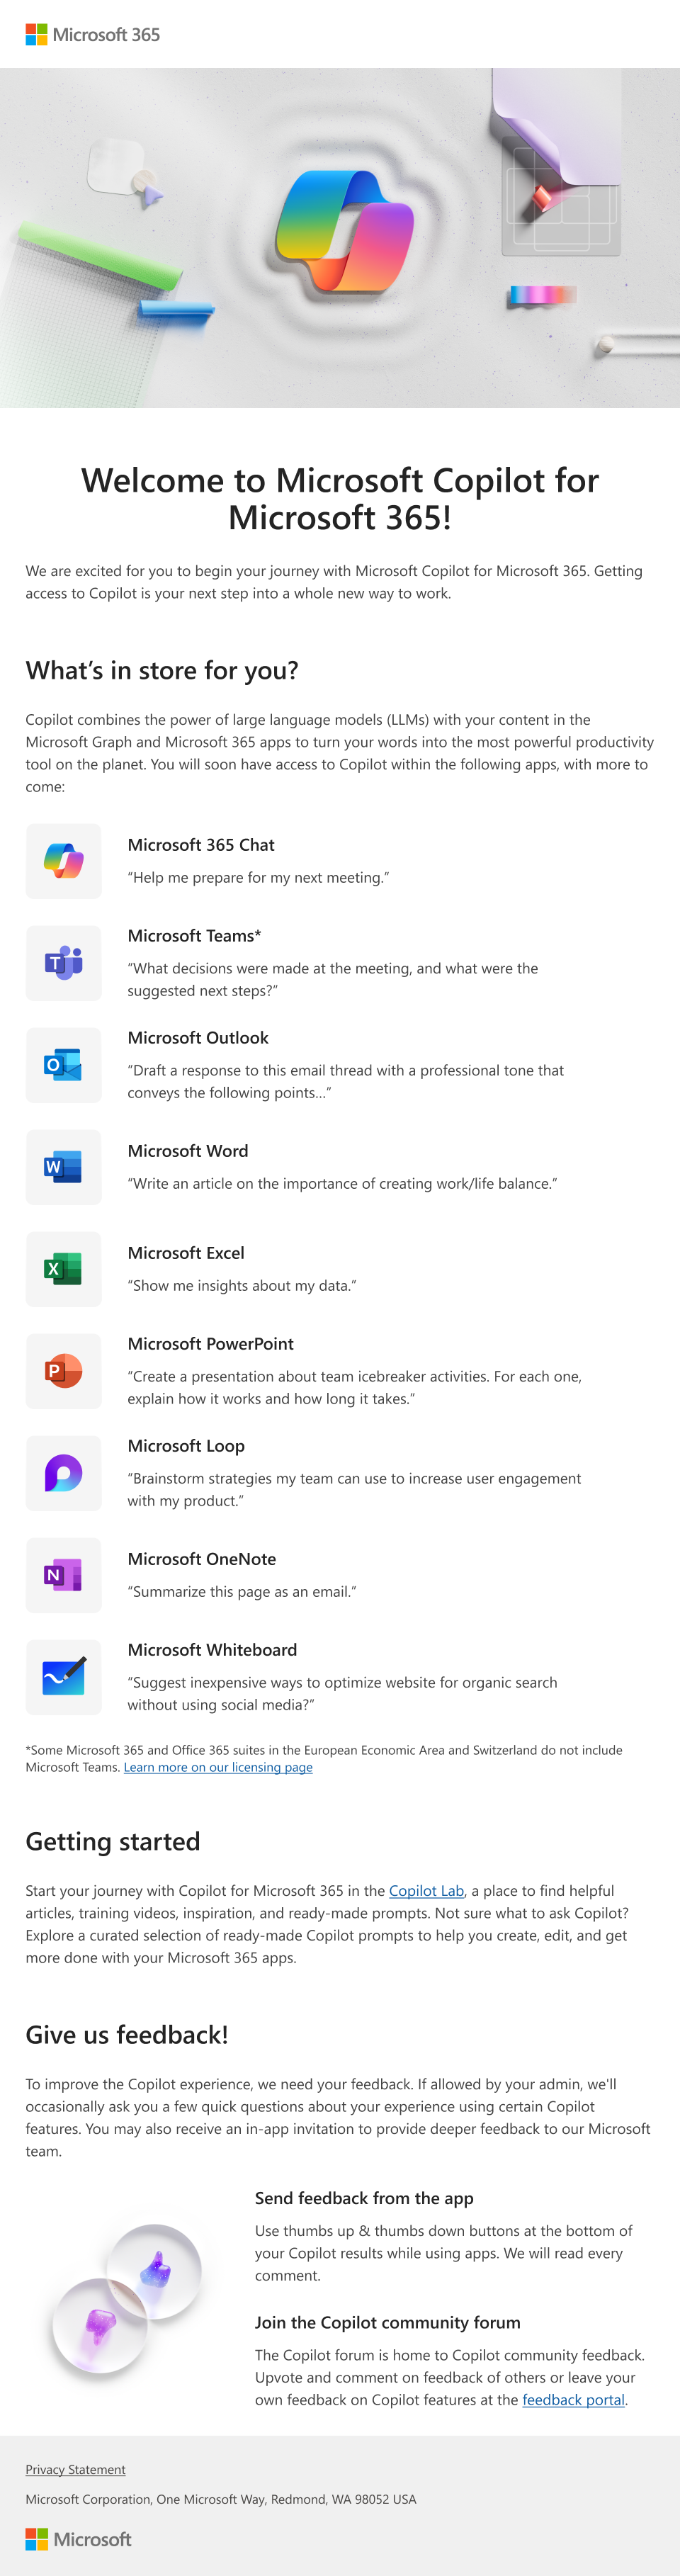 Uma imagem de um e-mail que apresenta o Microsoft Copilot para o Microsoft 365 e as respetivas capacidades que um administrador pode fornecer aos utilizadores.